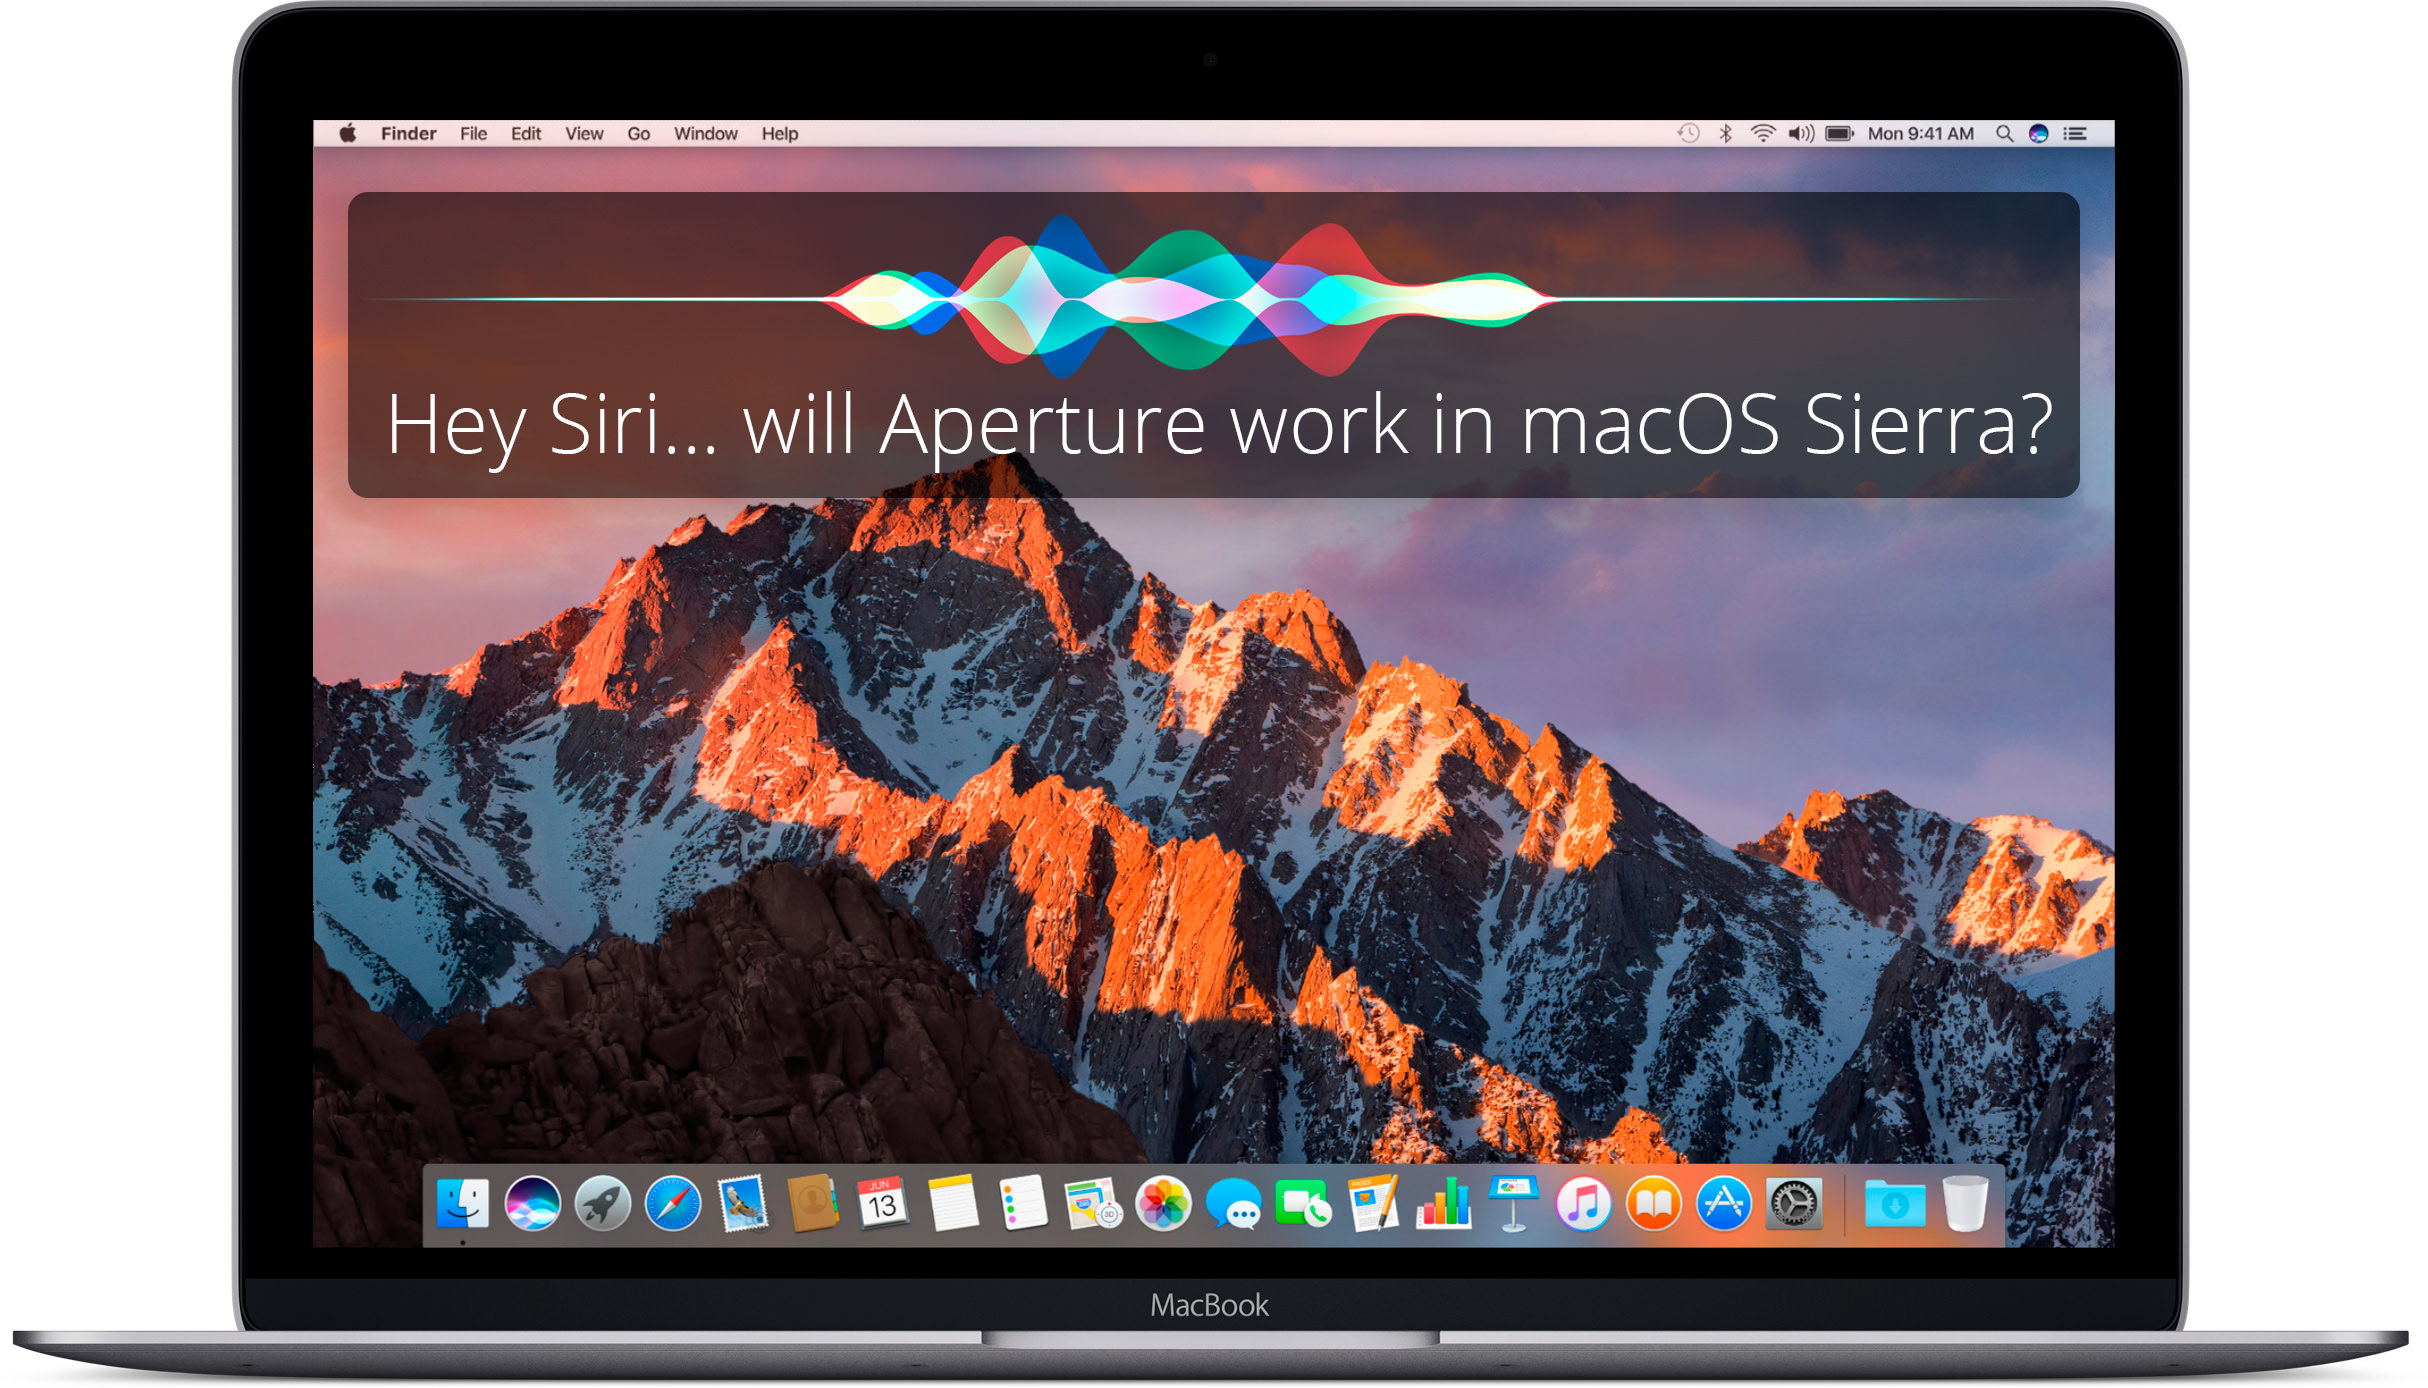 Hey Siri… will Aperture work in macOS Sierra?